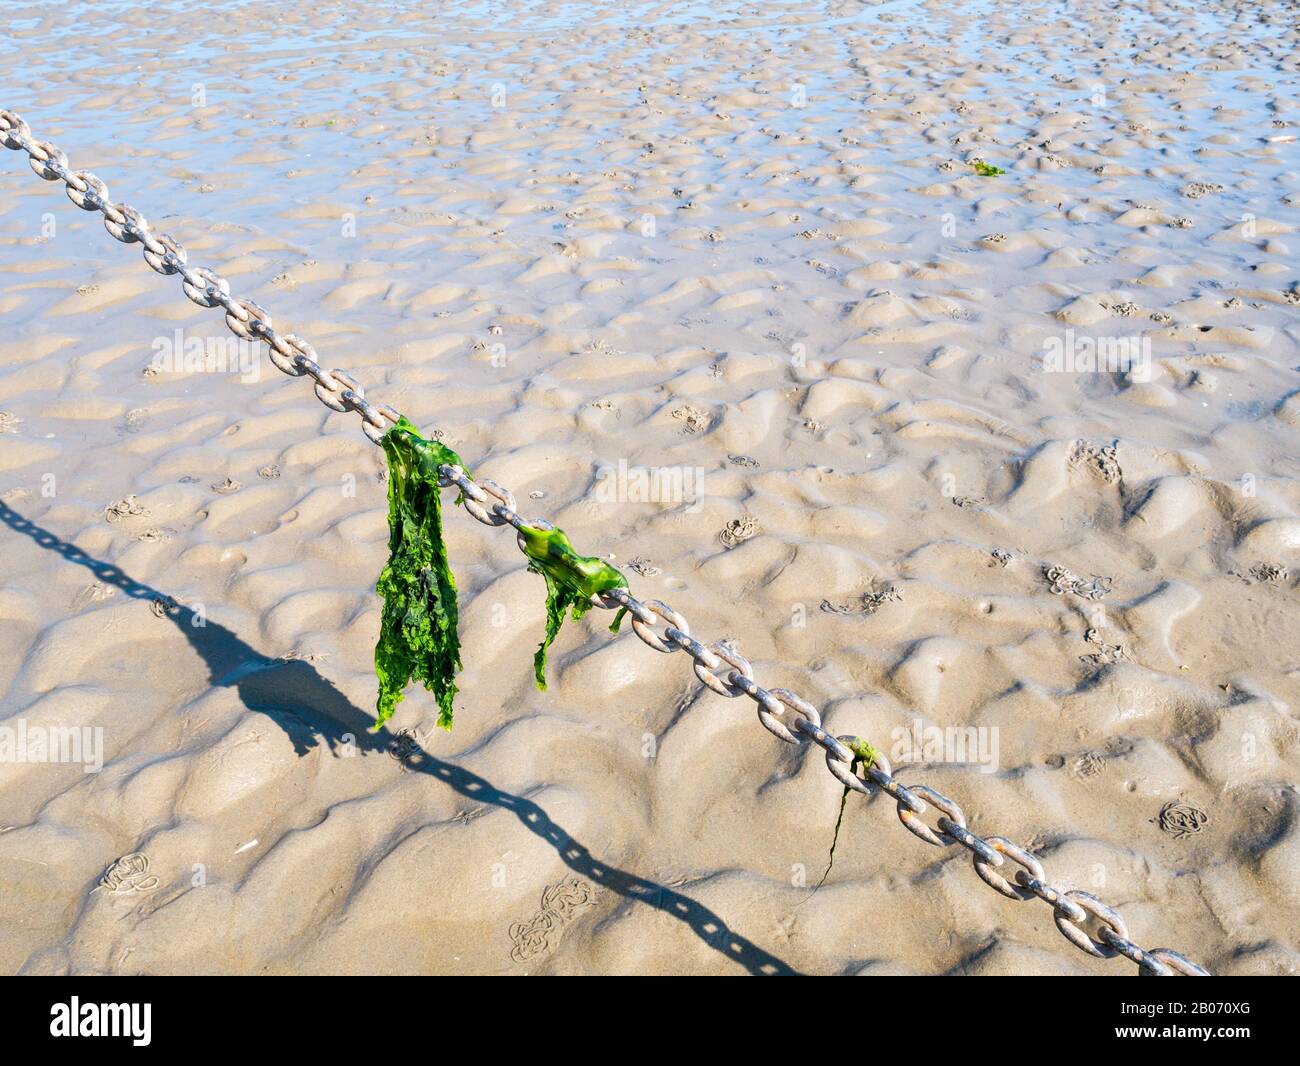 Feuilles de laitue de mer accrochées à la chaîne d'ancrage sur le sable à marée basse, Waddensea, Pays-Bas Banque D'Images